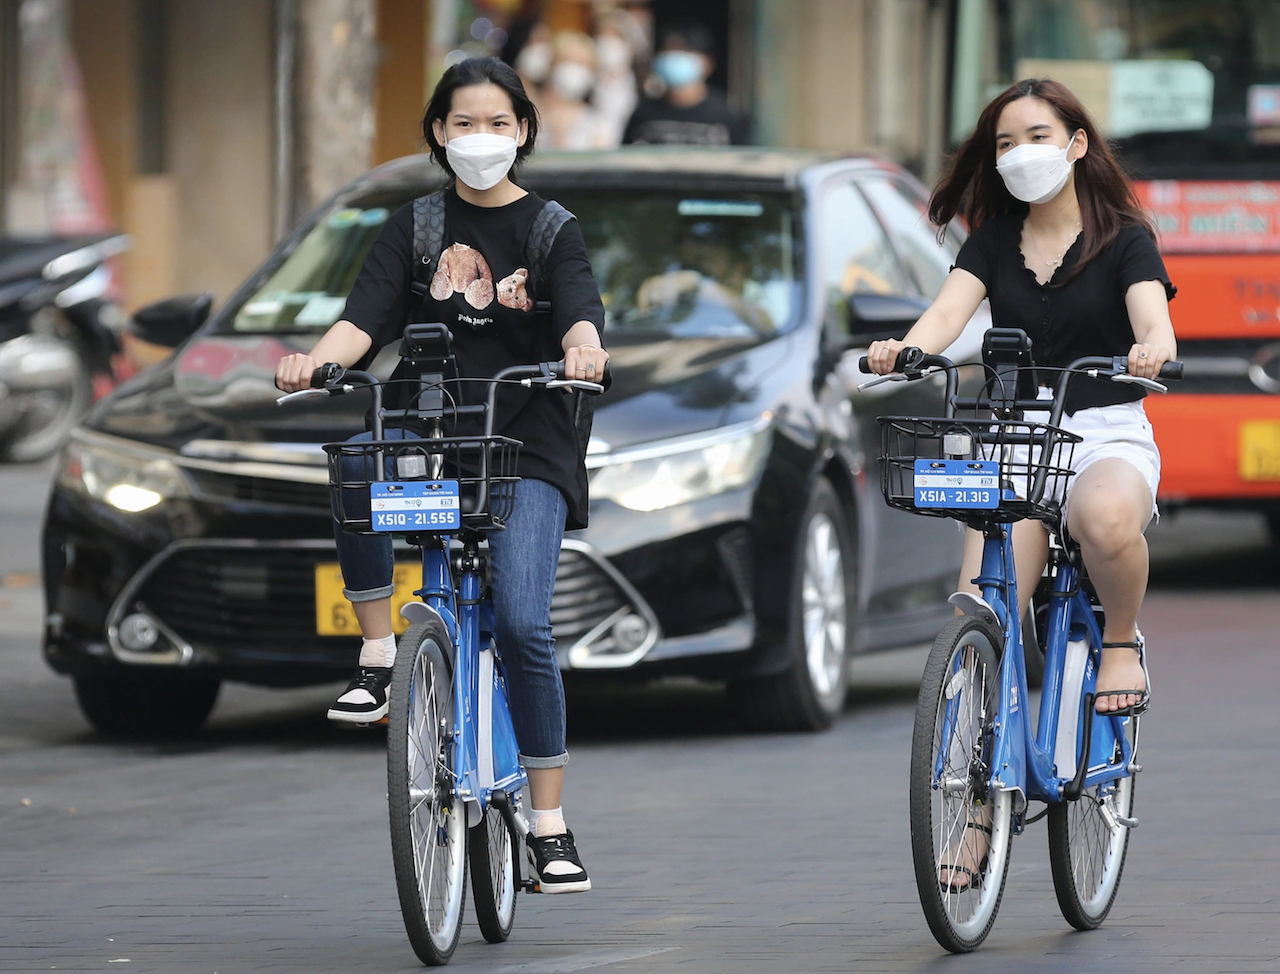 Dự án xe đạp công cộng tại Hà Nội đã đạt nhiều kết quả tích cực sau hơn 2 tháng triển khai. Trung bình mỗi ngày có 1.649 chuyến đi, thời gian di chuyển bình quân là 52 phút (Ảnh - Người lao động)